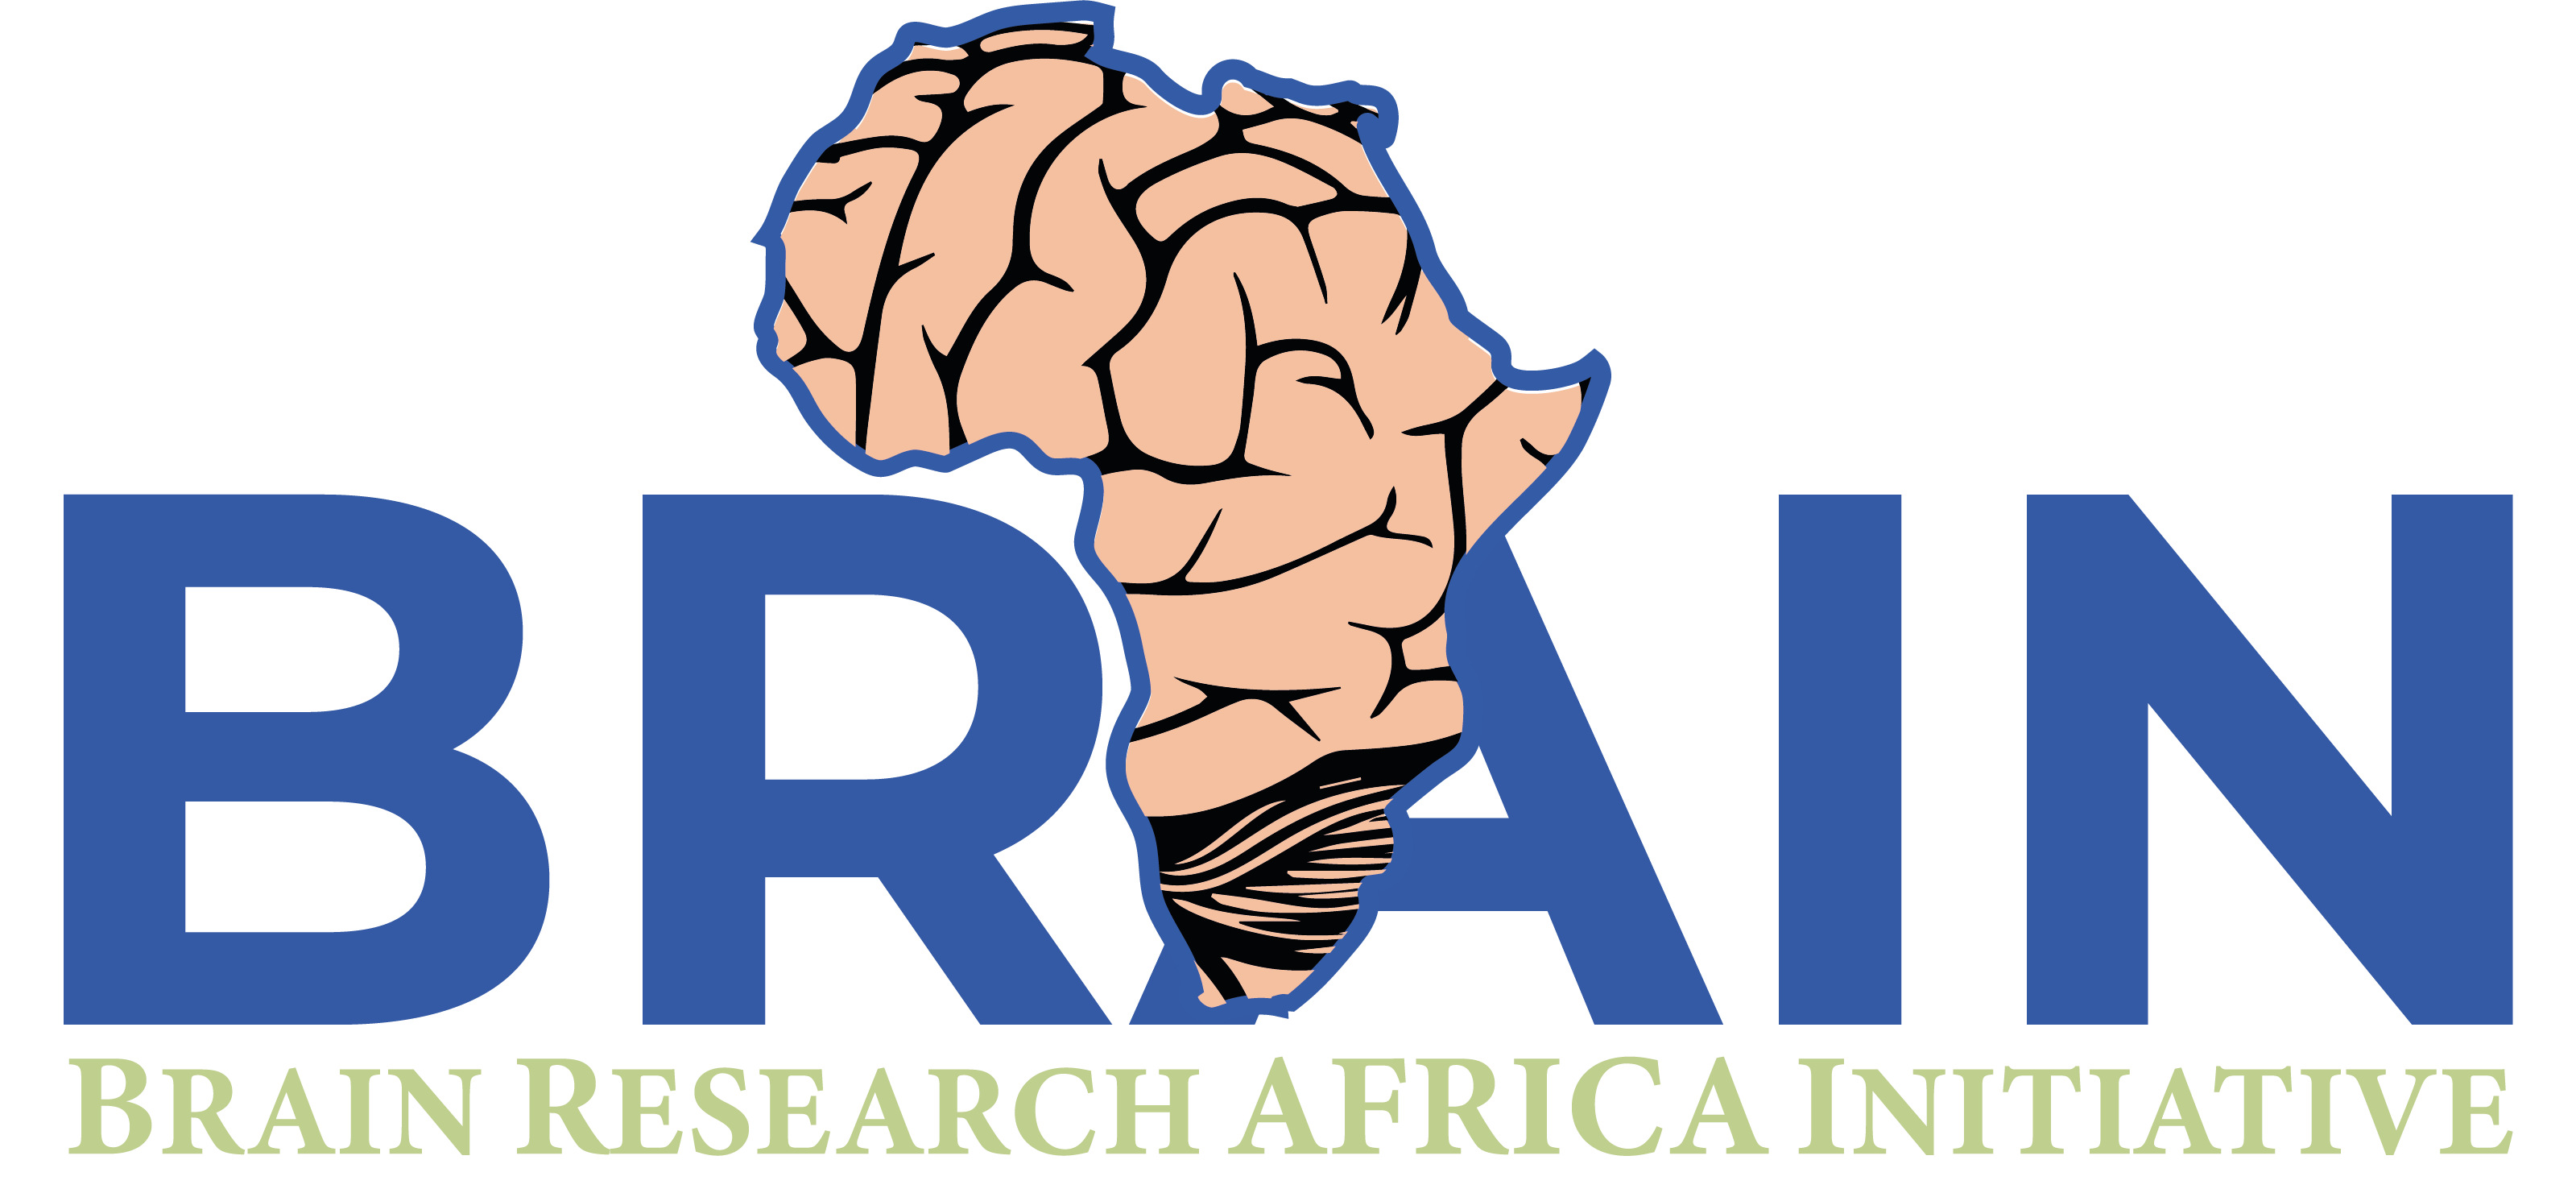  BRAIN RESEARCH AFRICA INITIATIVE